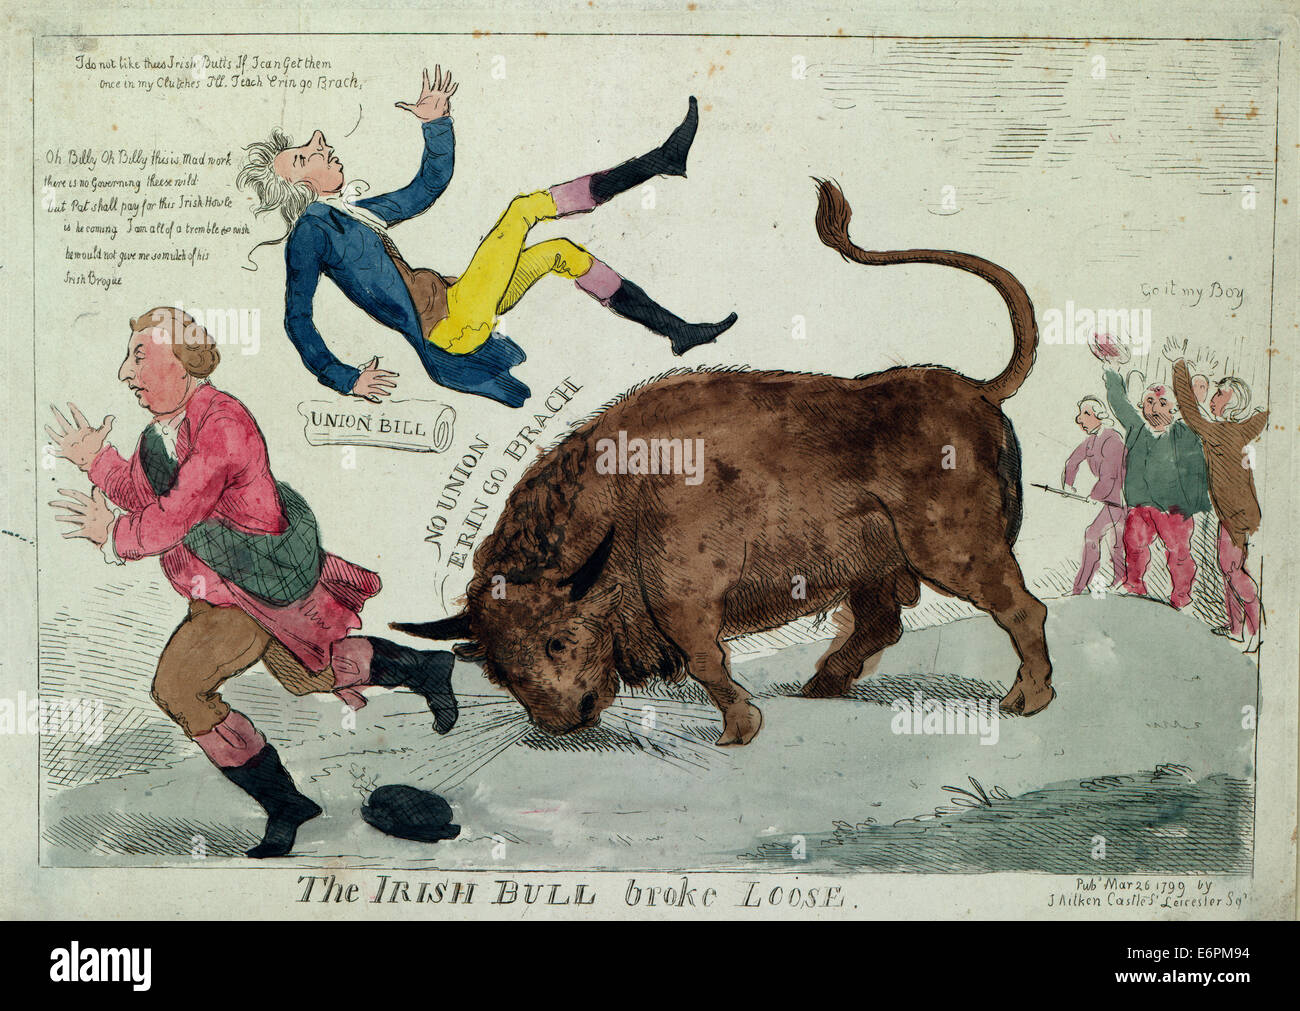 Le taureau irlandais s'est détaché - Résumé : indique les 'Bull' irlandais William Pitt le jetant en l'air et sur le point de faire la même chose à Lord Dundas qui court vers la gauche ; à l'extrême droite, ceux qui sont opposés à l'Union européenne 'loi' applaudir la bull, 'Rendez-il mon garçon." caricature politique, 1799 Banque D'Images